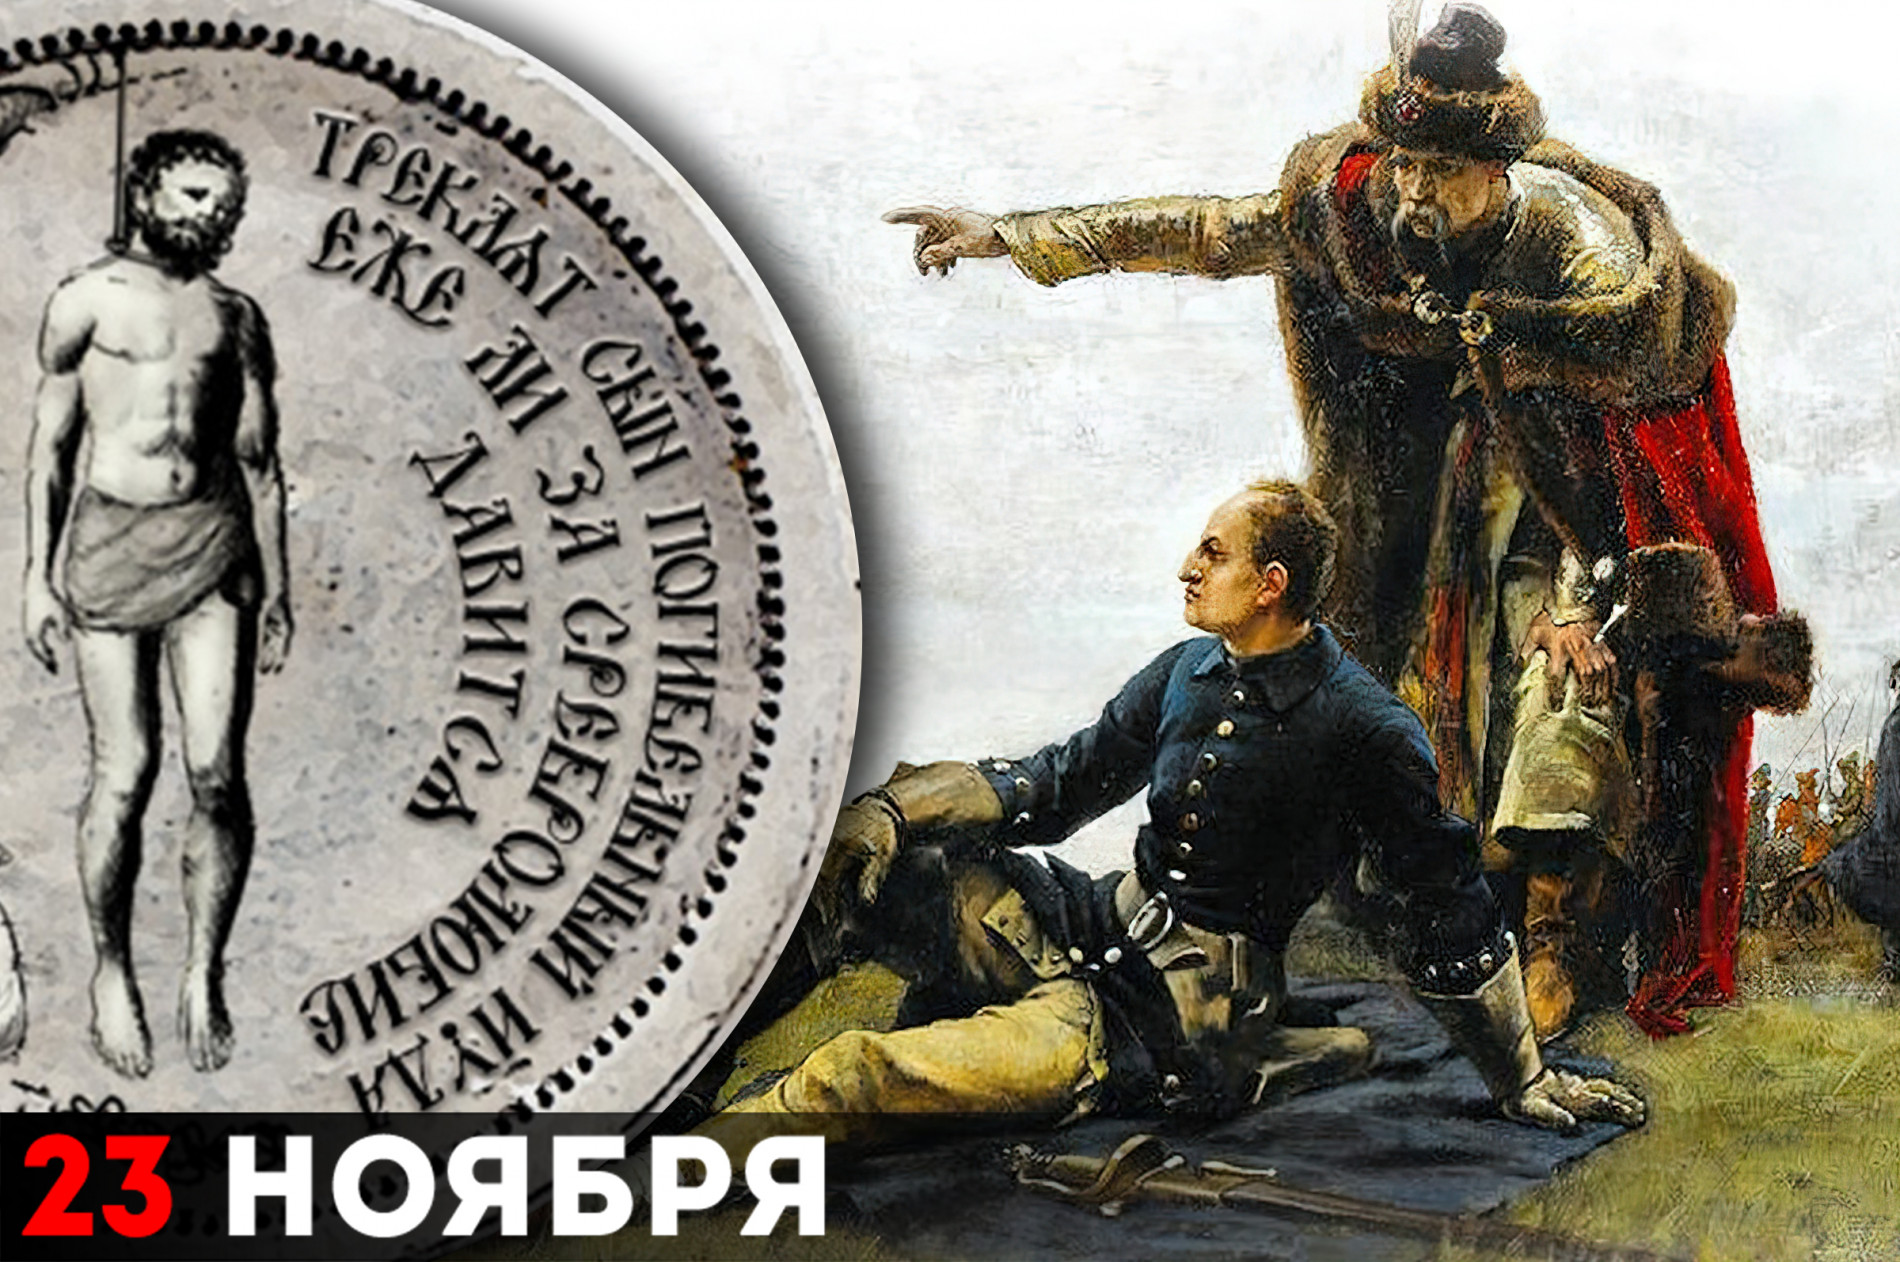 В коллаже использована репродукция картины Густава Седерстрёма «Мазепа и Карл XII после Полтавской битвы»